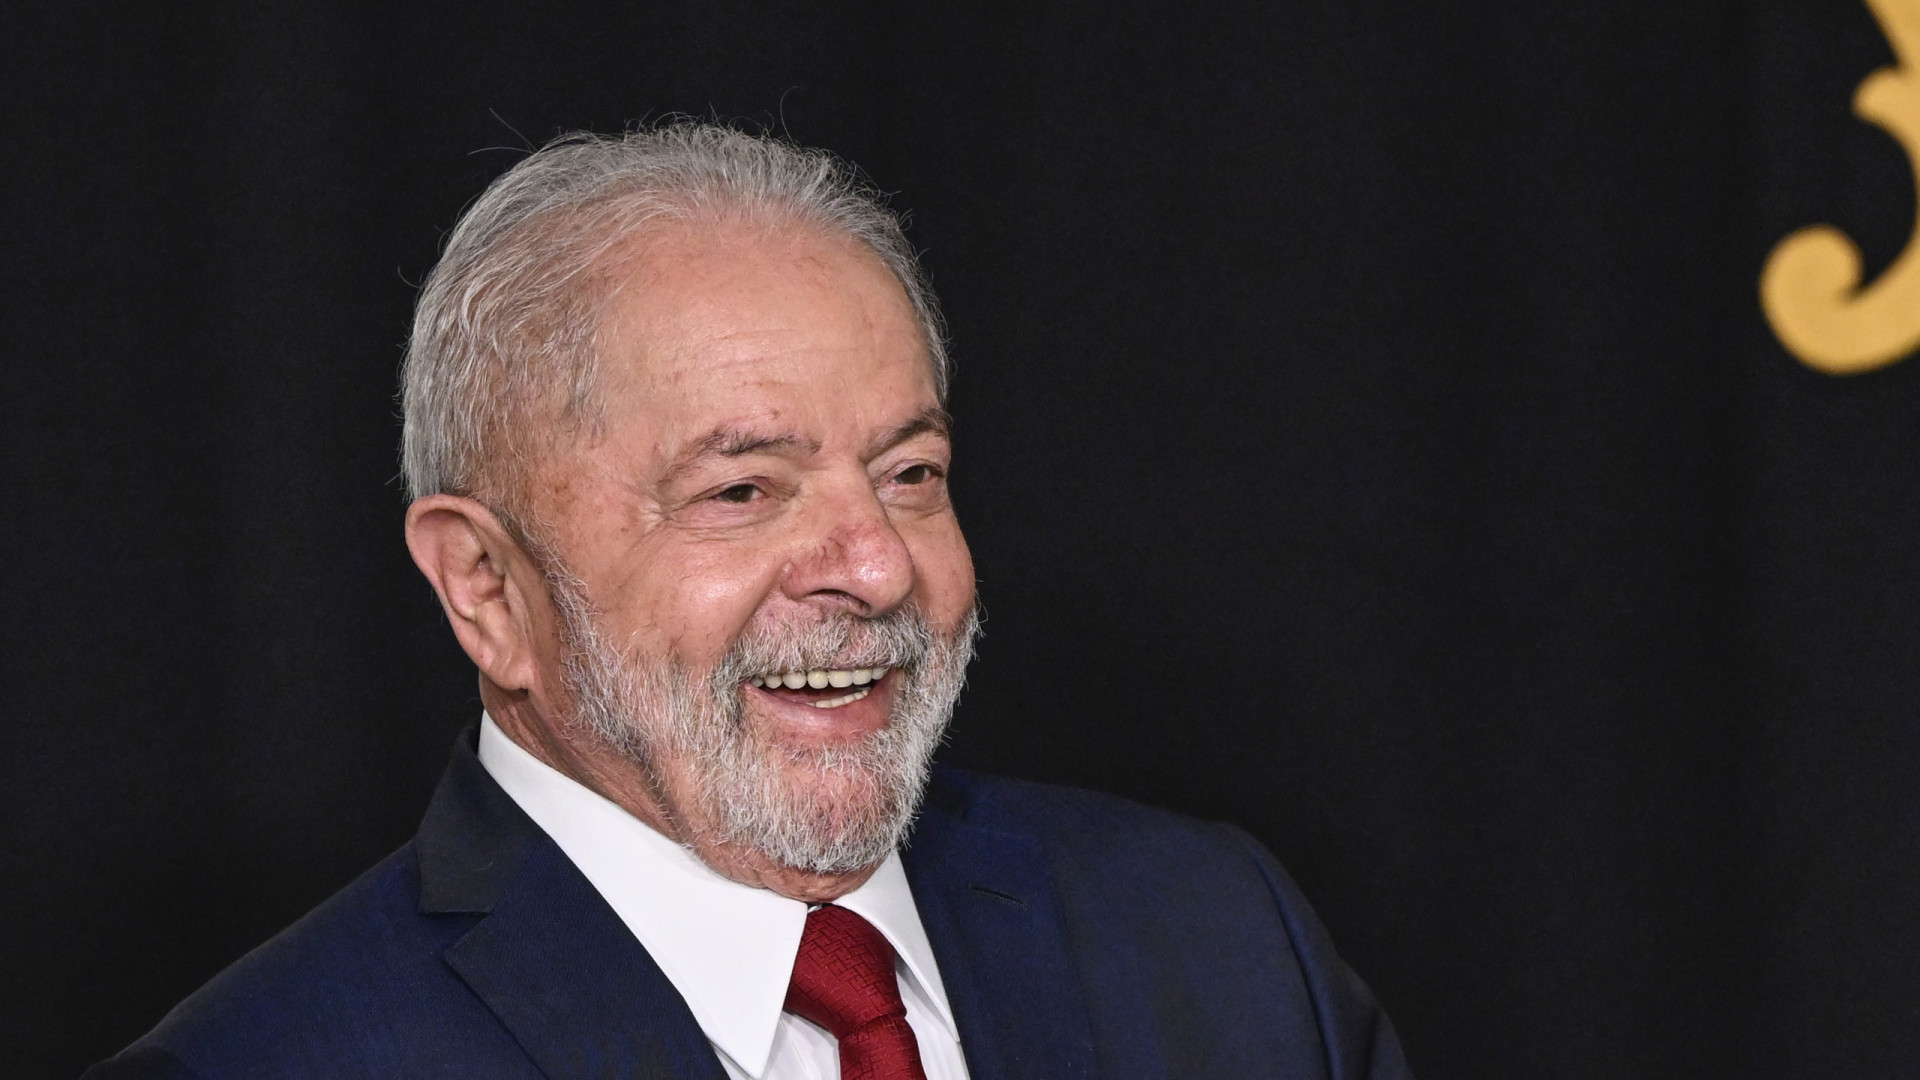 Diplomação: Confira o que falta para Lula assumir a presidência do Brasil